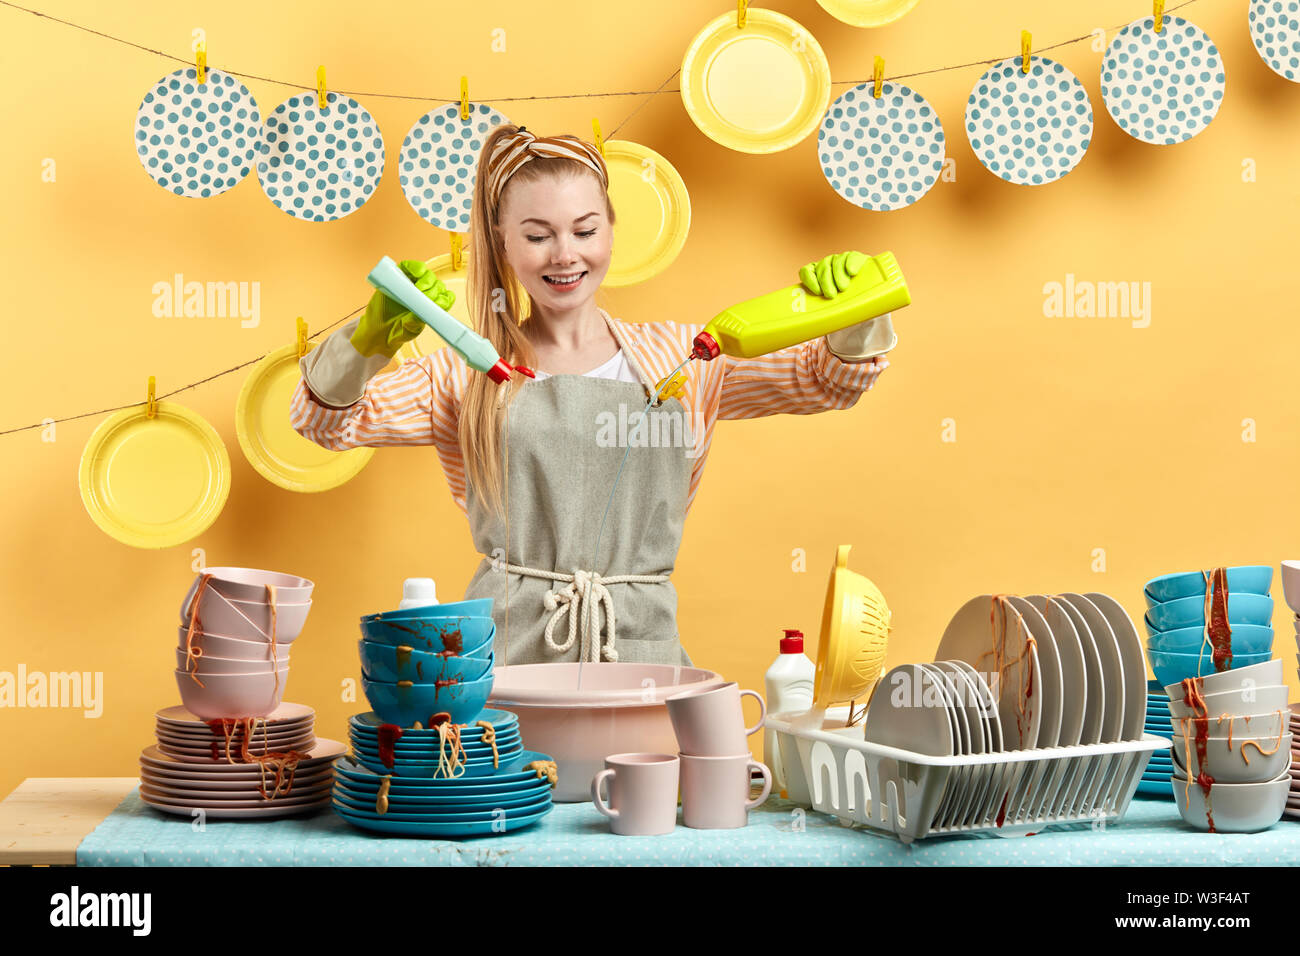 Una donna con un grembiule giallo è in piedi davanti al bancone della cucina.